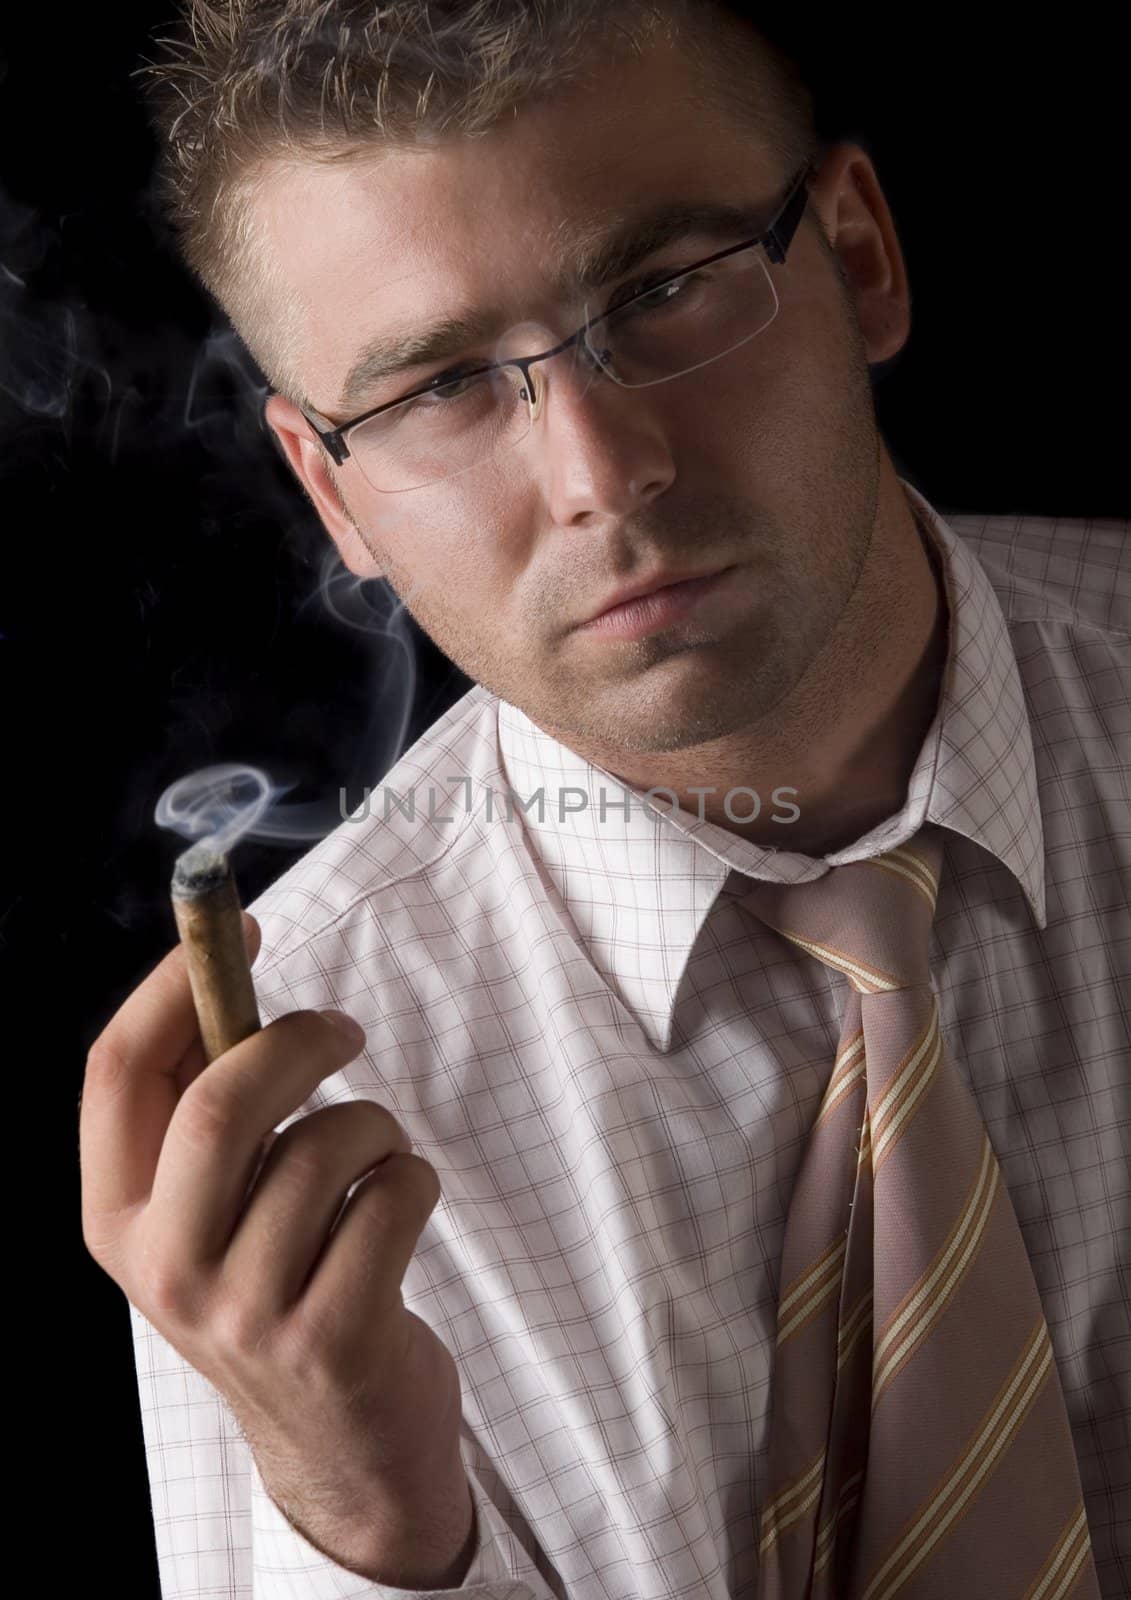 Businessman smoking cigar by shiffti